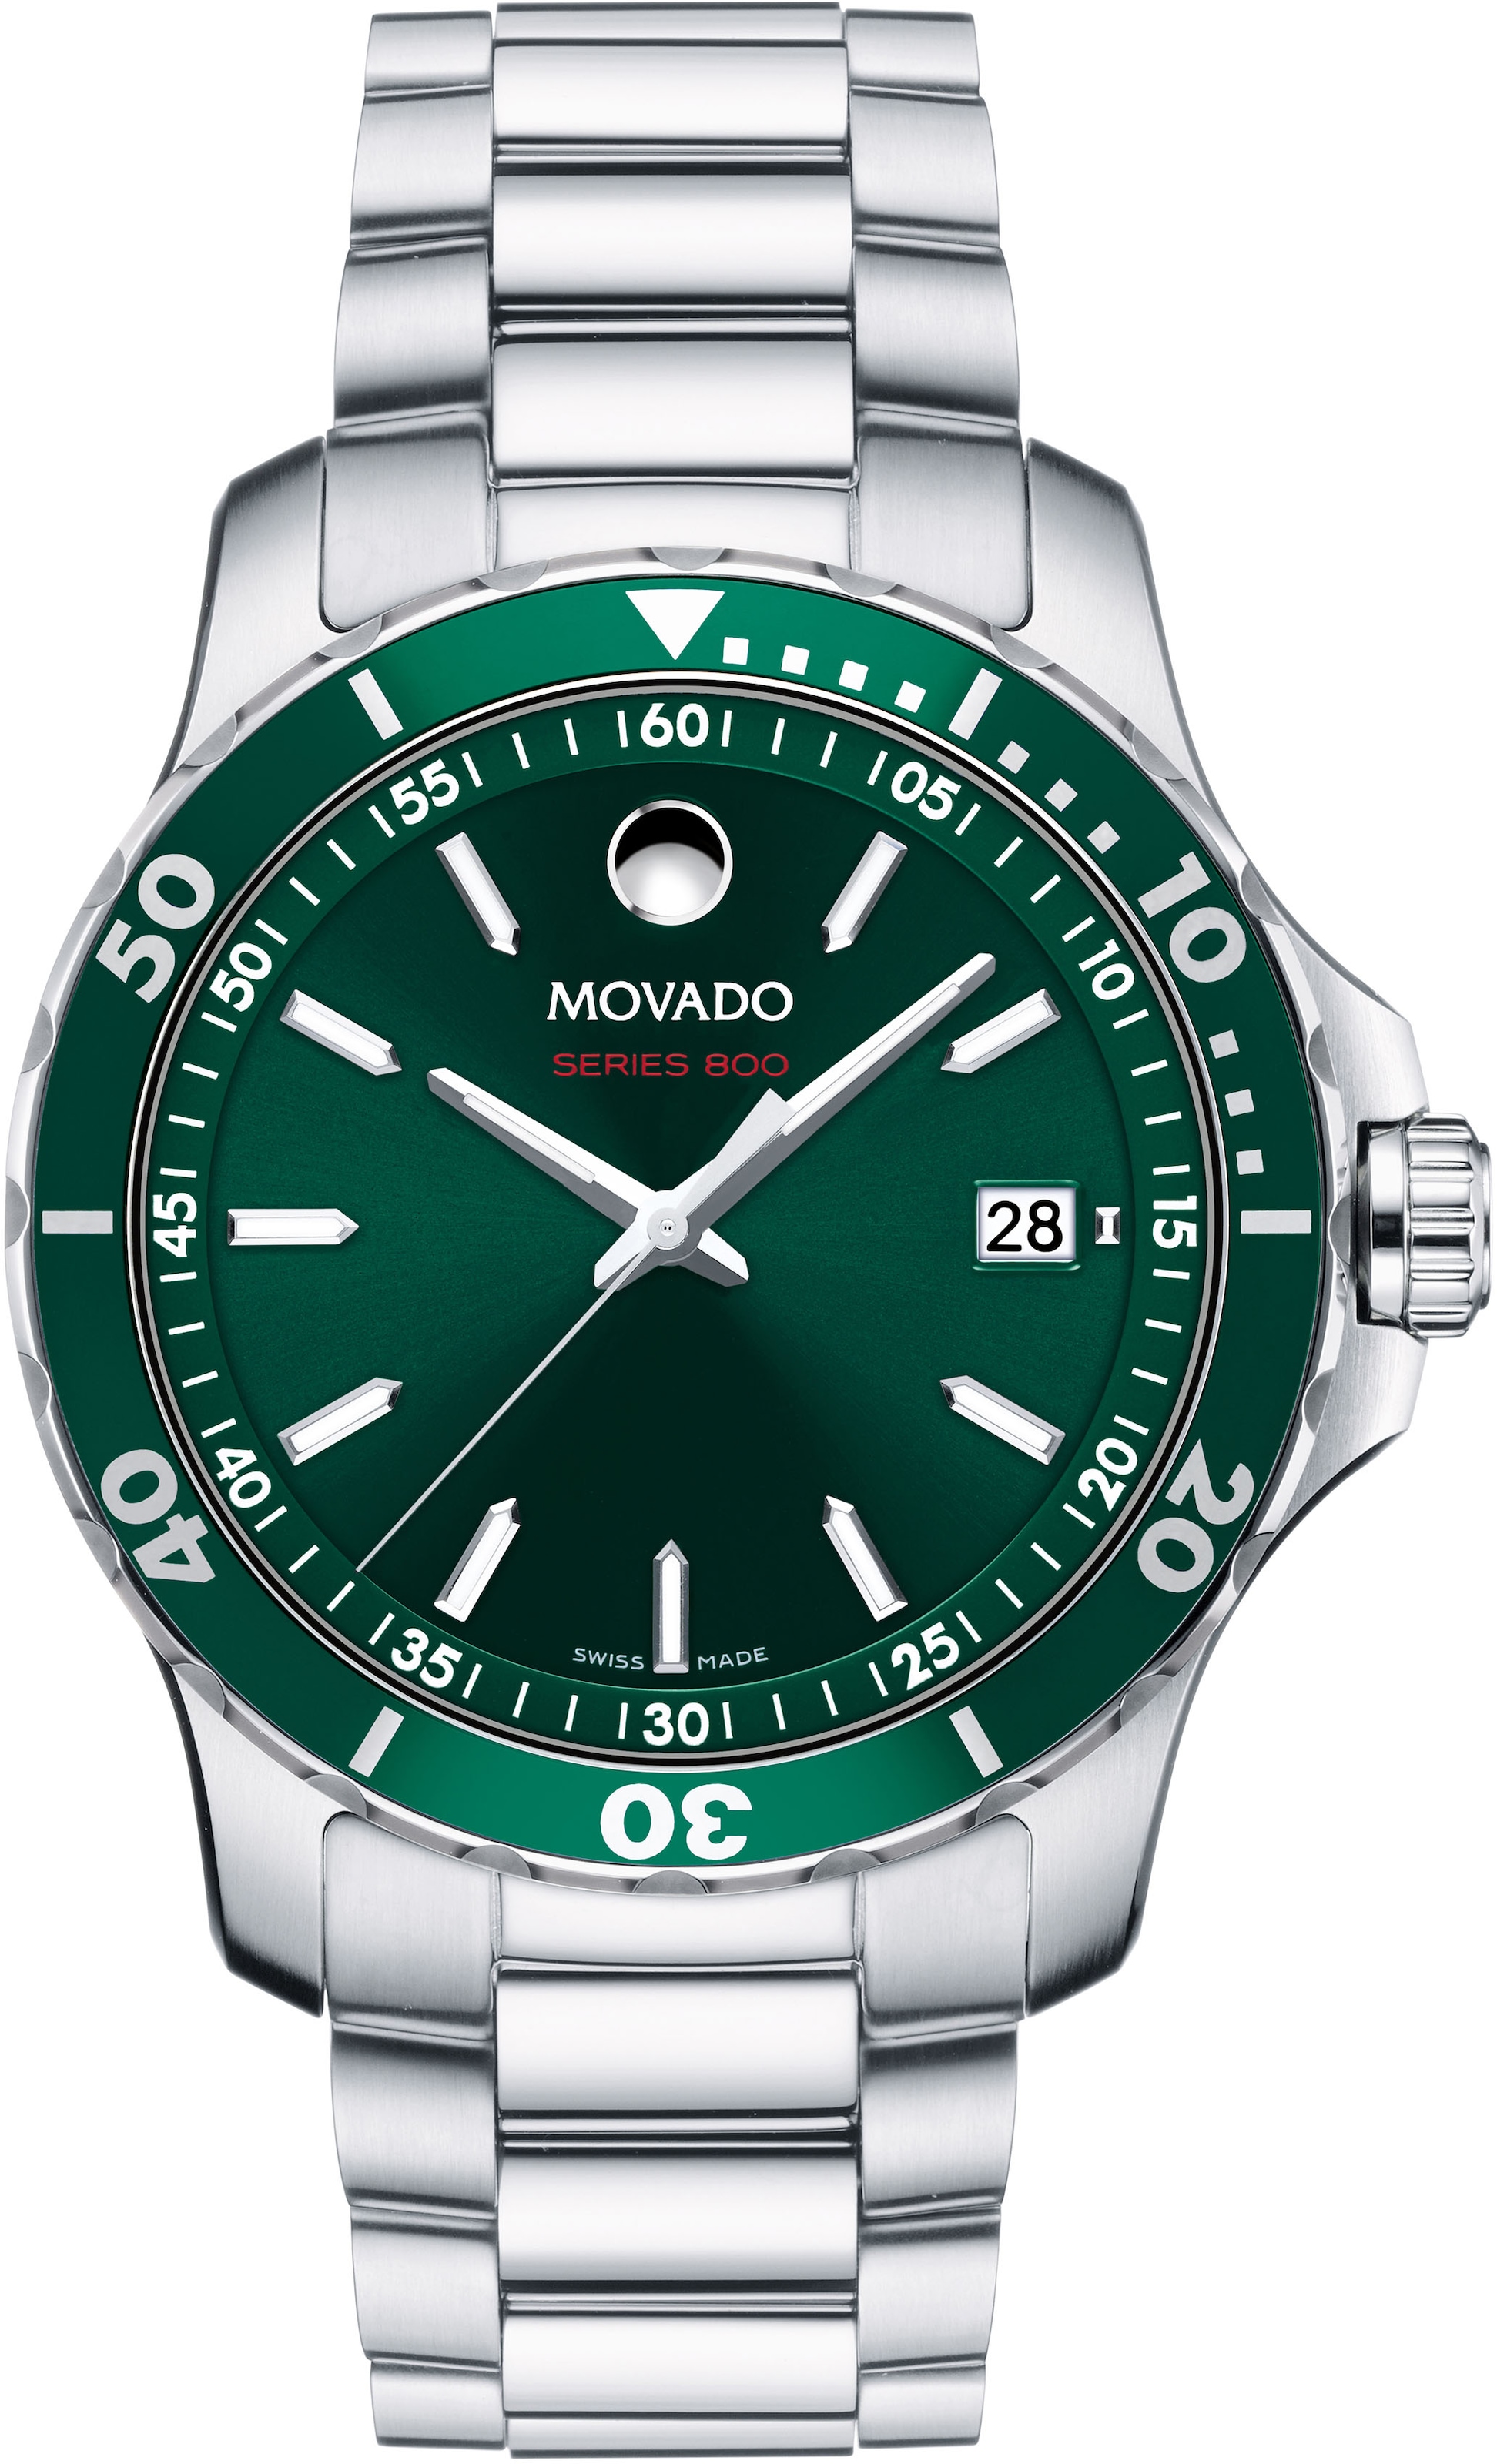 MOVADO Schweizer auf Uhr Rechnung »Series 800, kaufen 2600136«